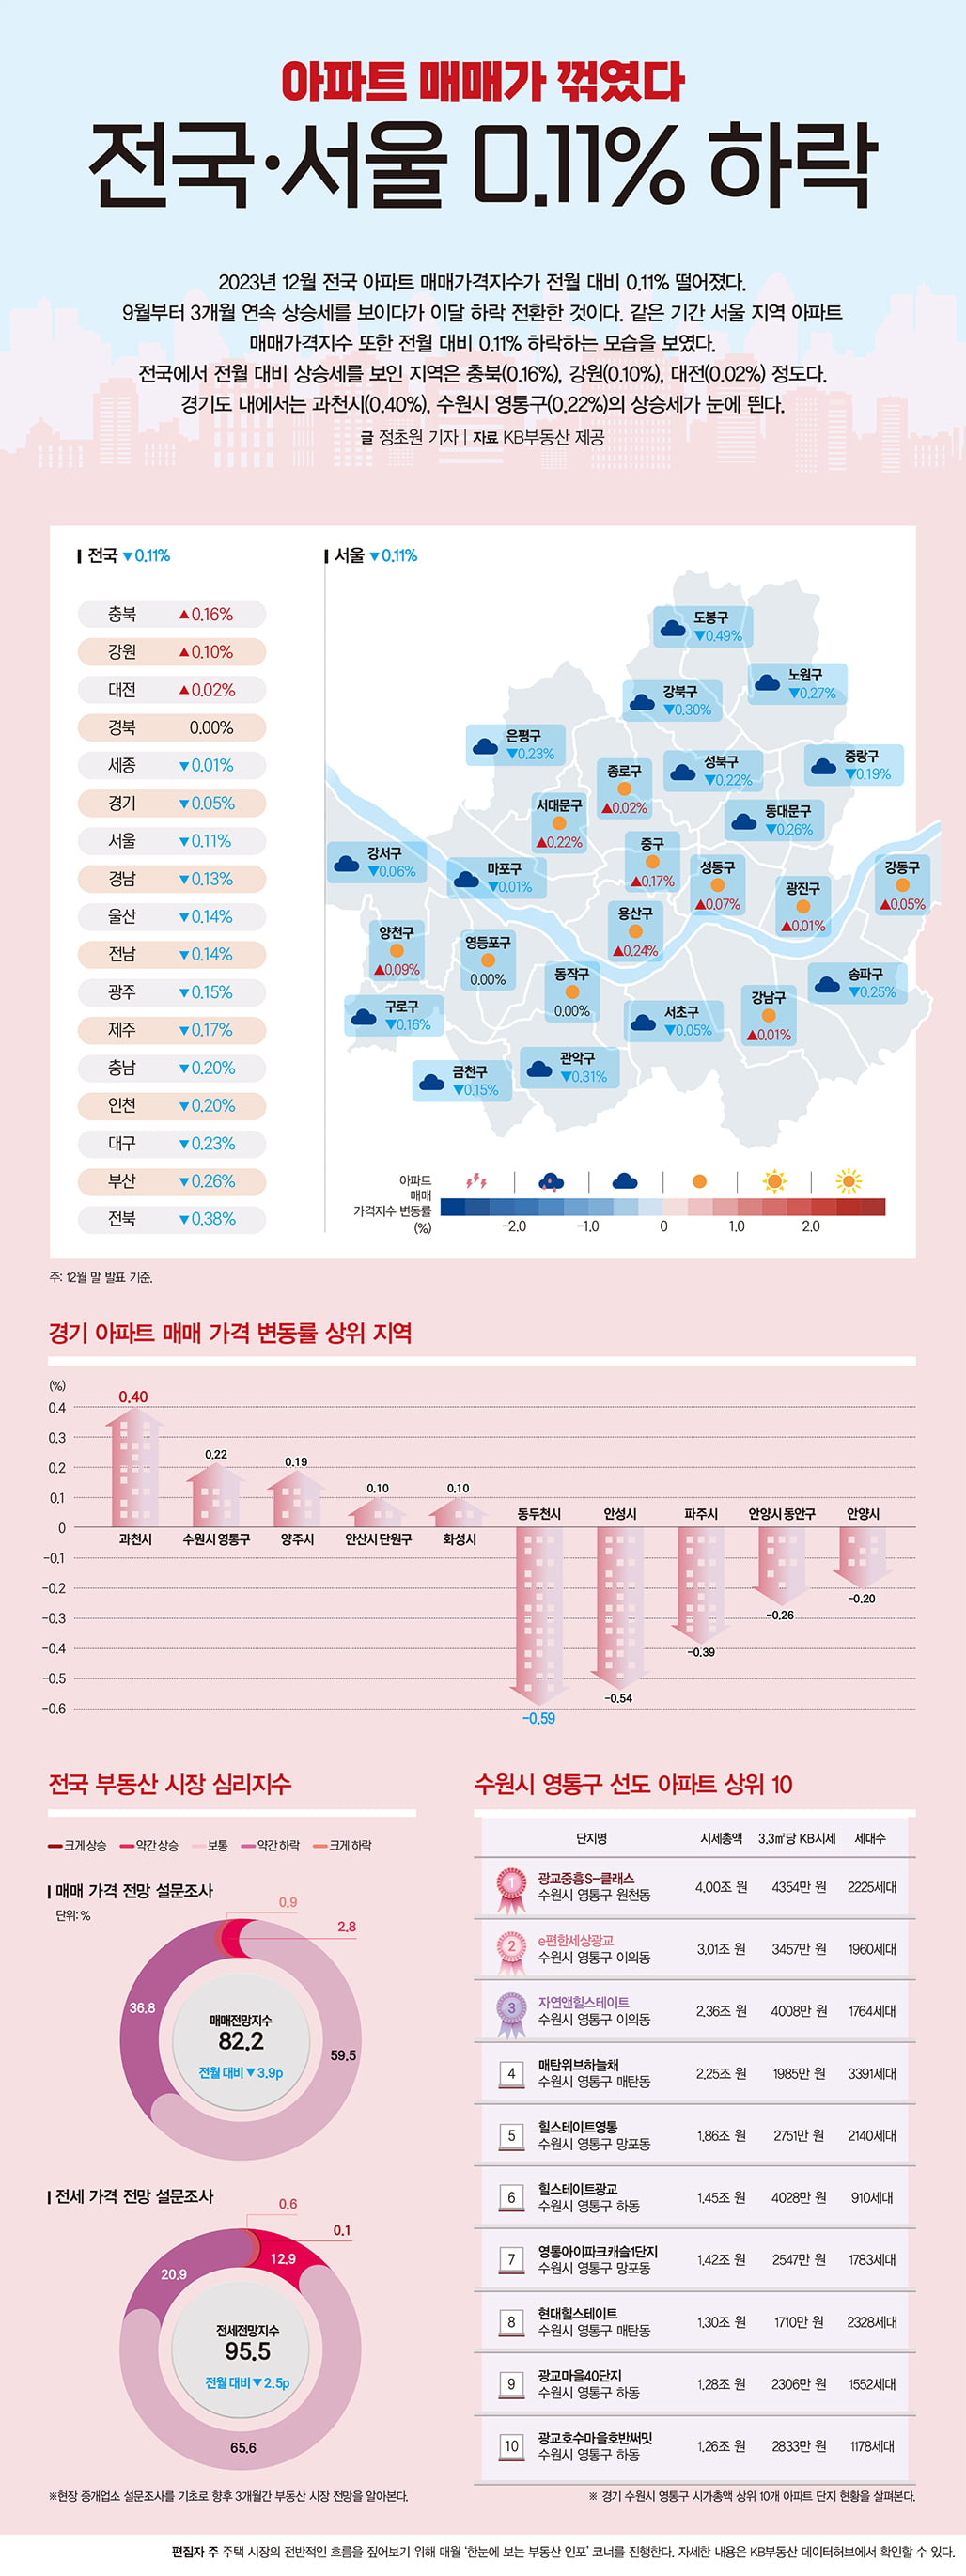 아파트 매매가 꺾였다…전국·서울 0.11% 하락